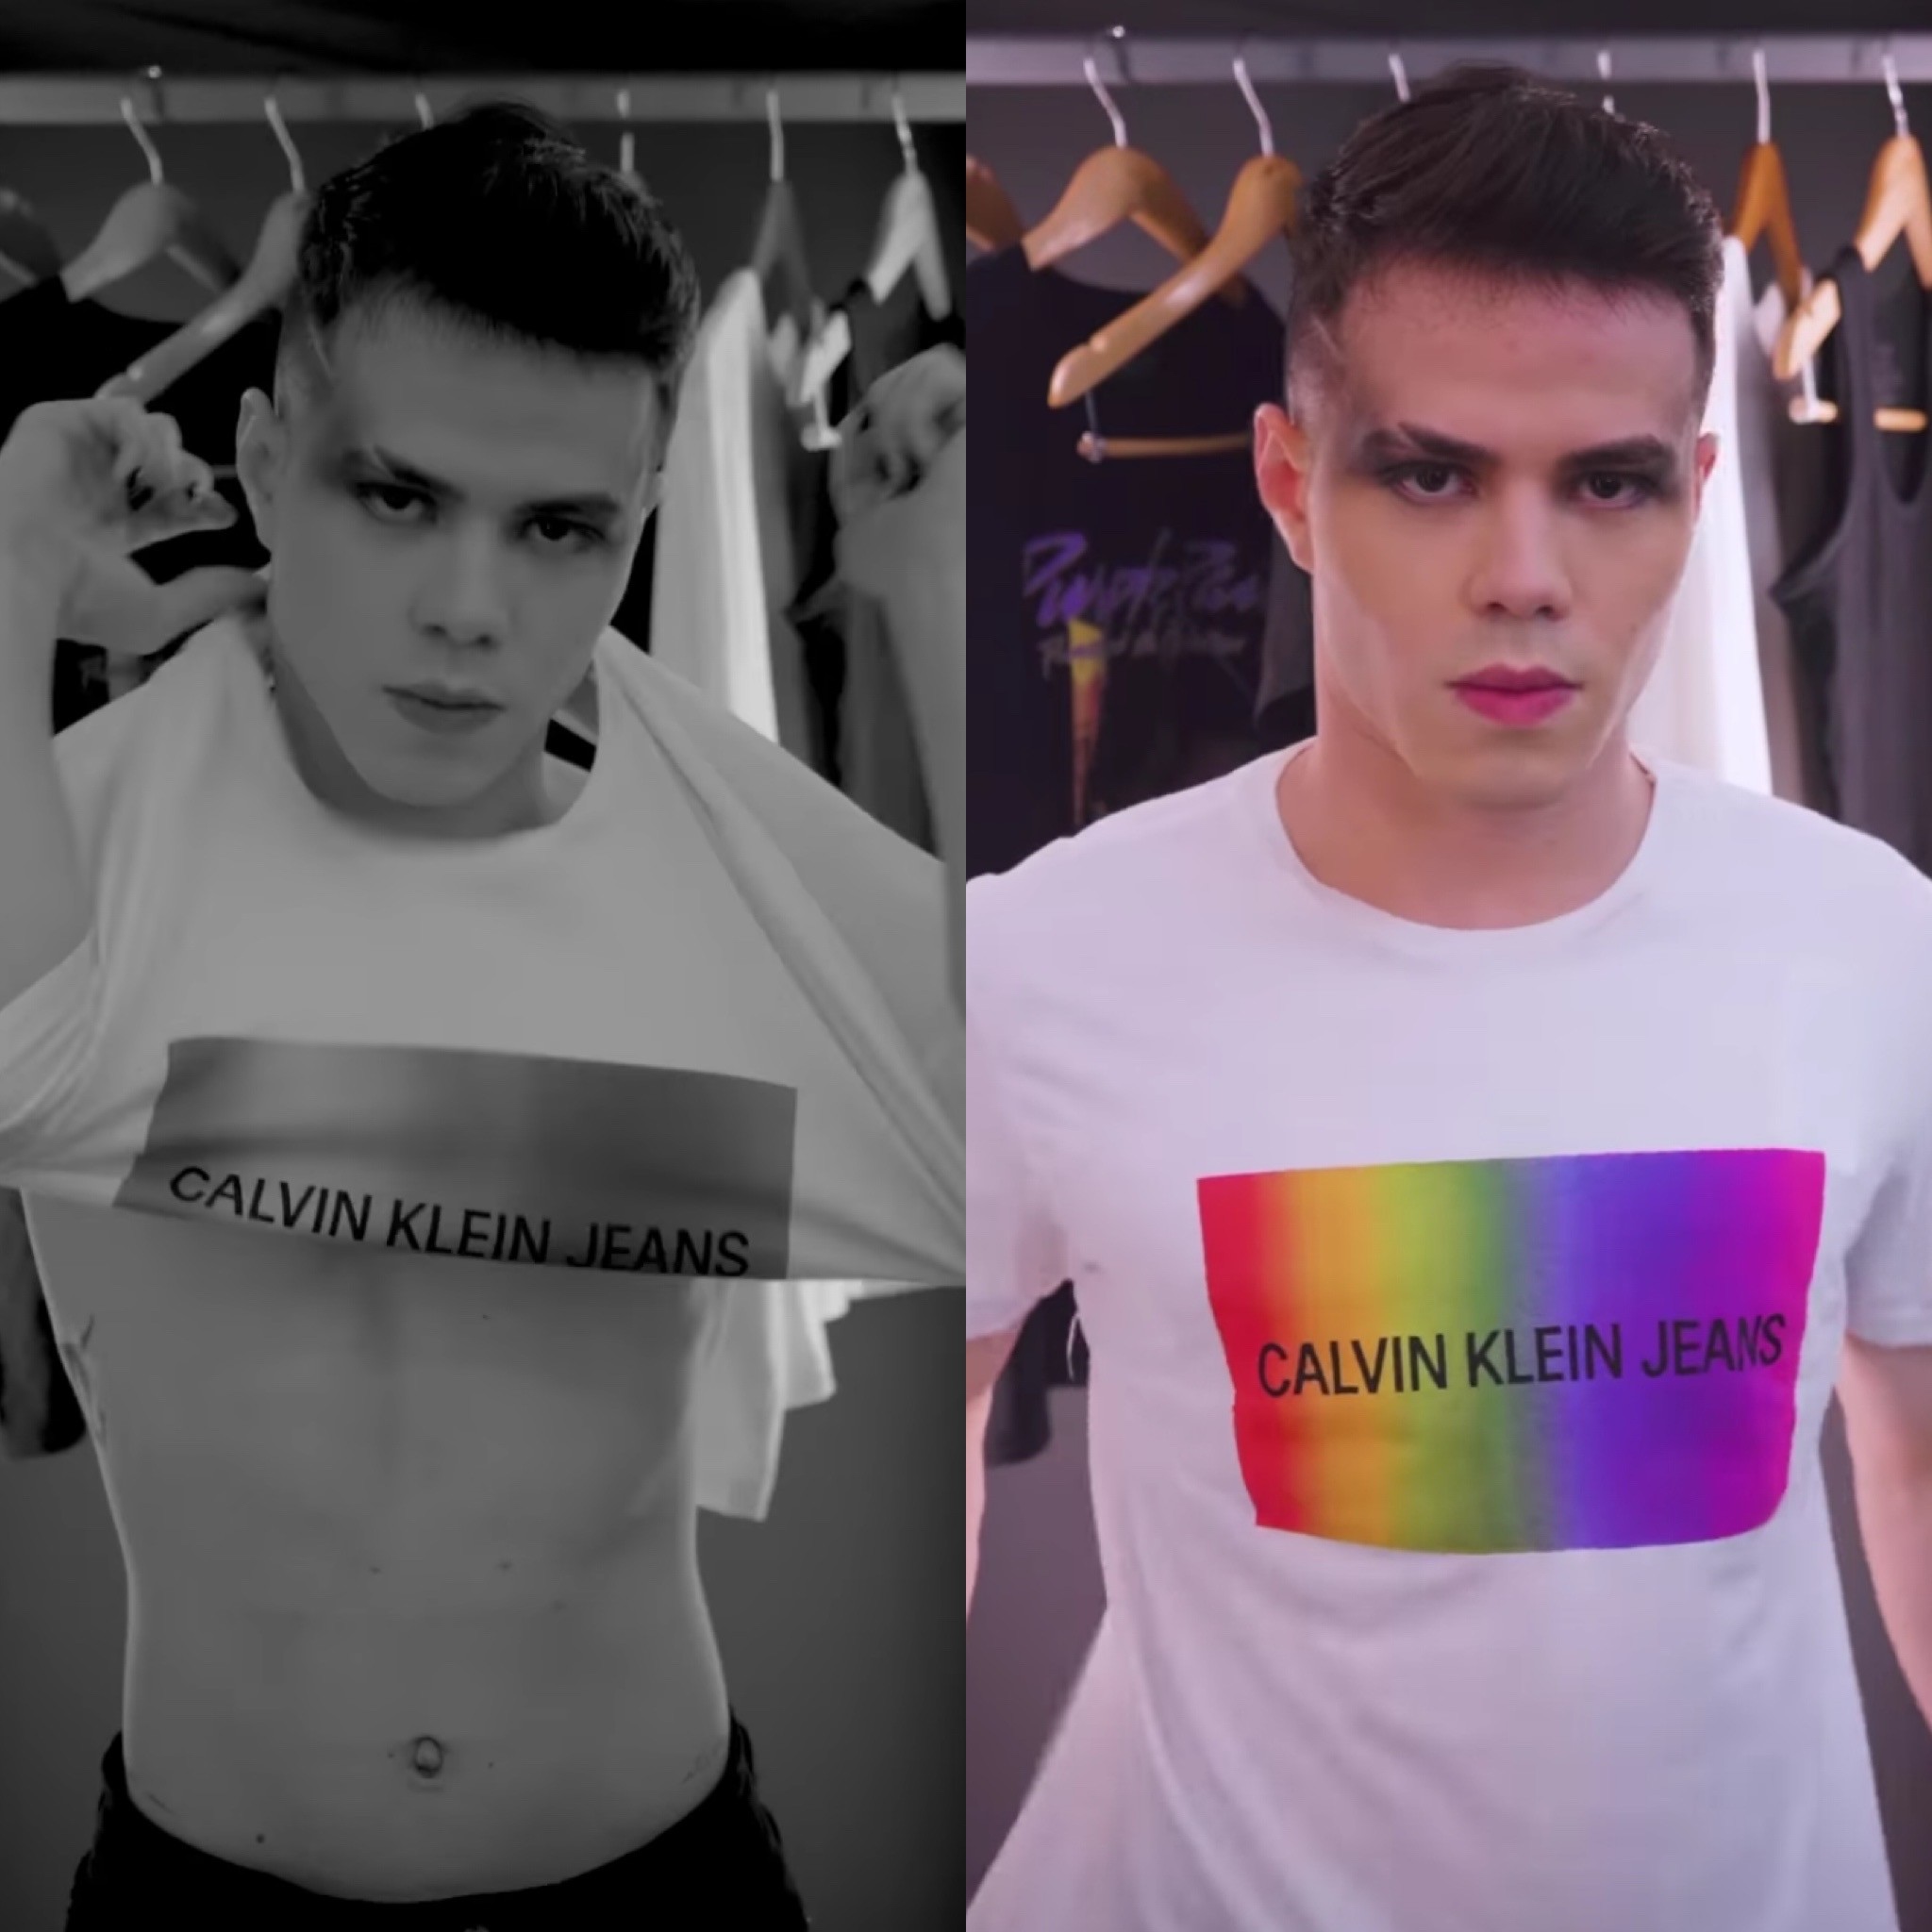 Influenciador revela ser gay em campanha patrocinada pela Calvin Klein; assista (Foto: Instagram)